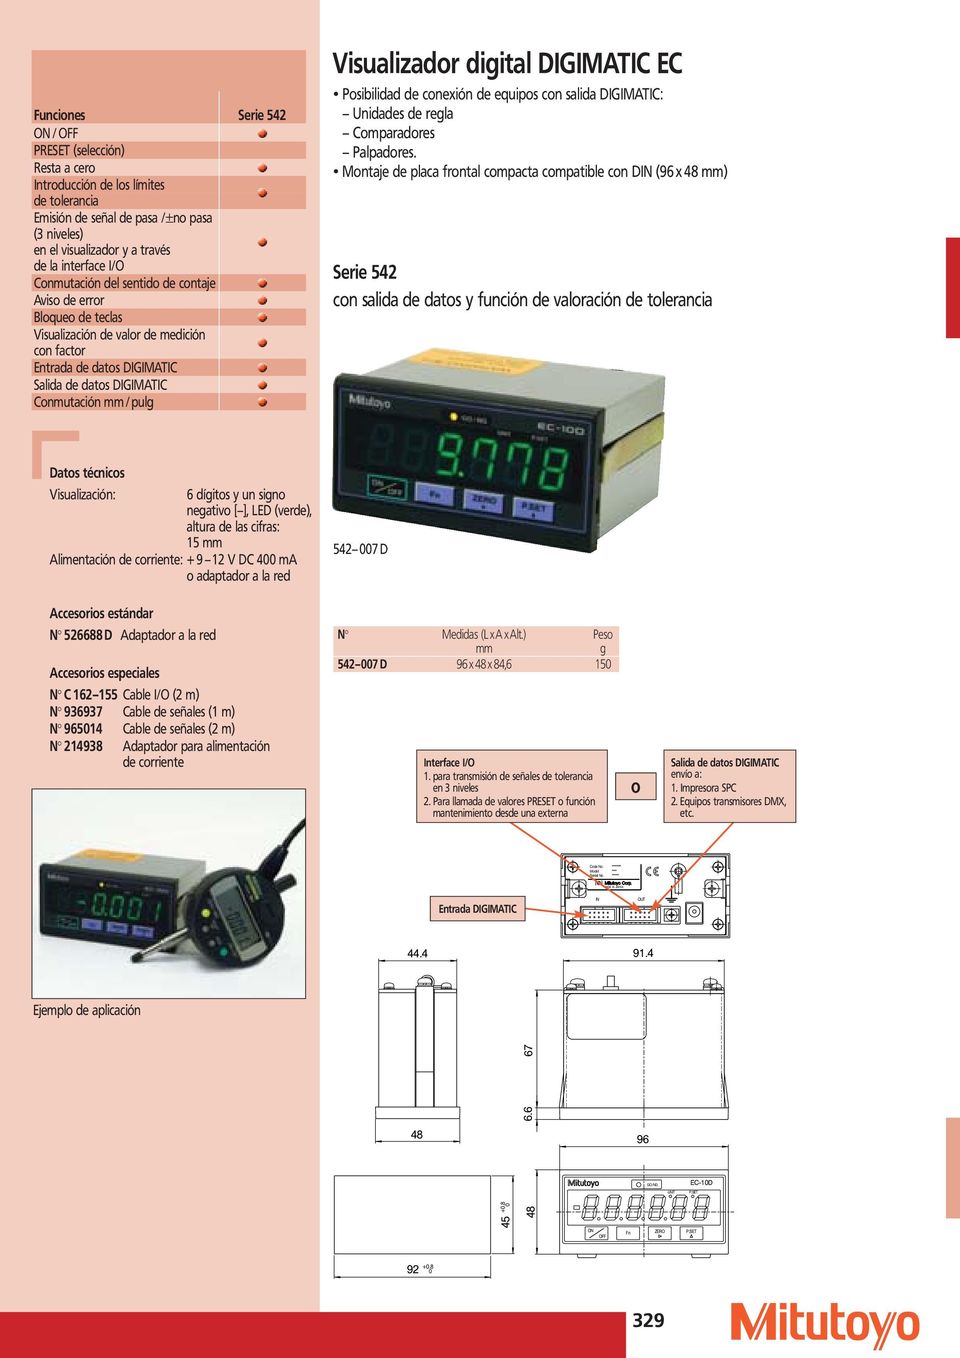 Visualizador digital DIGIMATIC EC Posibilidad de conexión de equipos con salida DIGIMATIC: Unidades de regla Comparadores Palpadores.